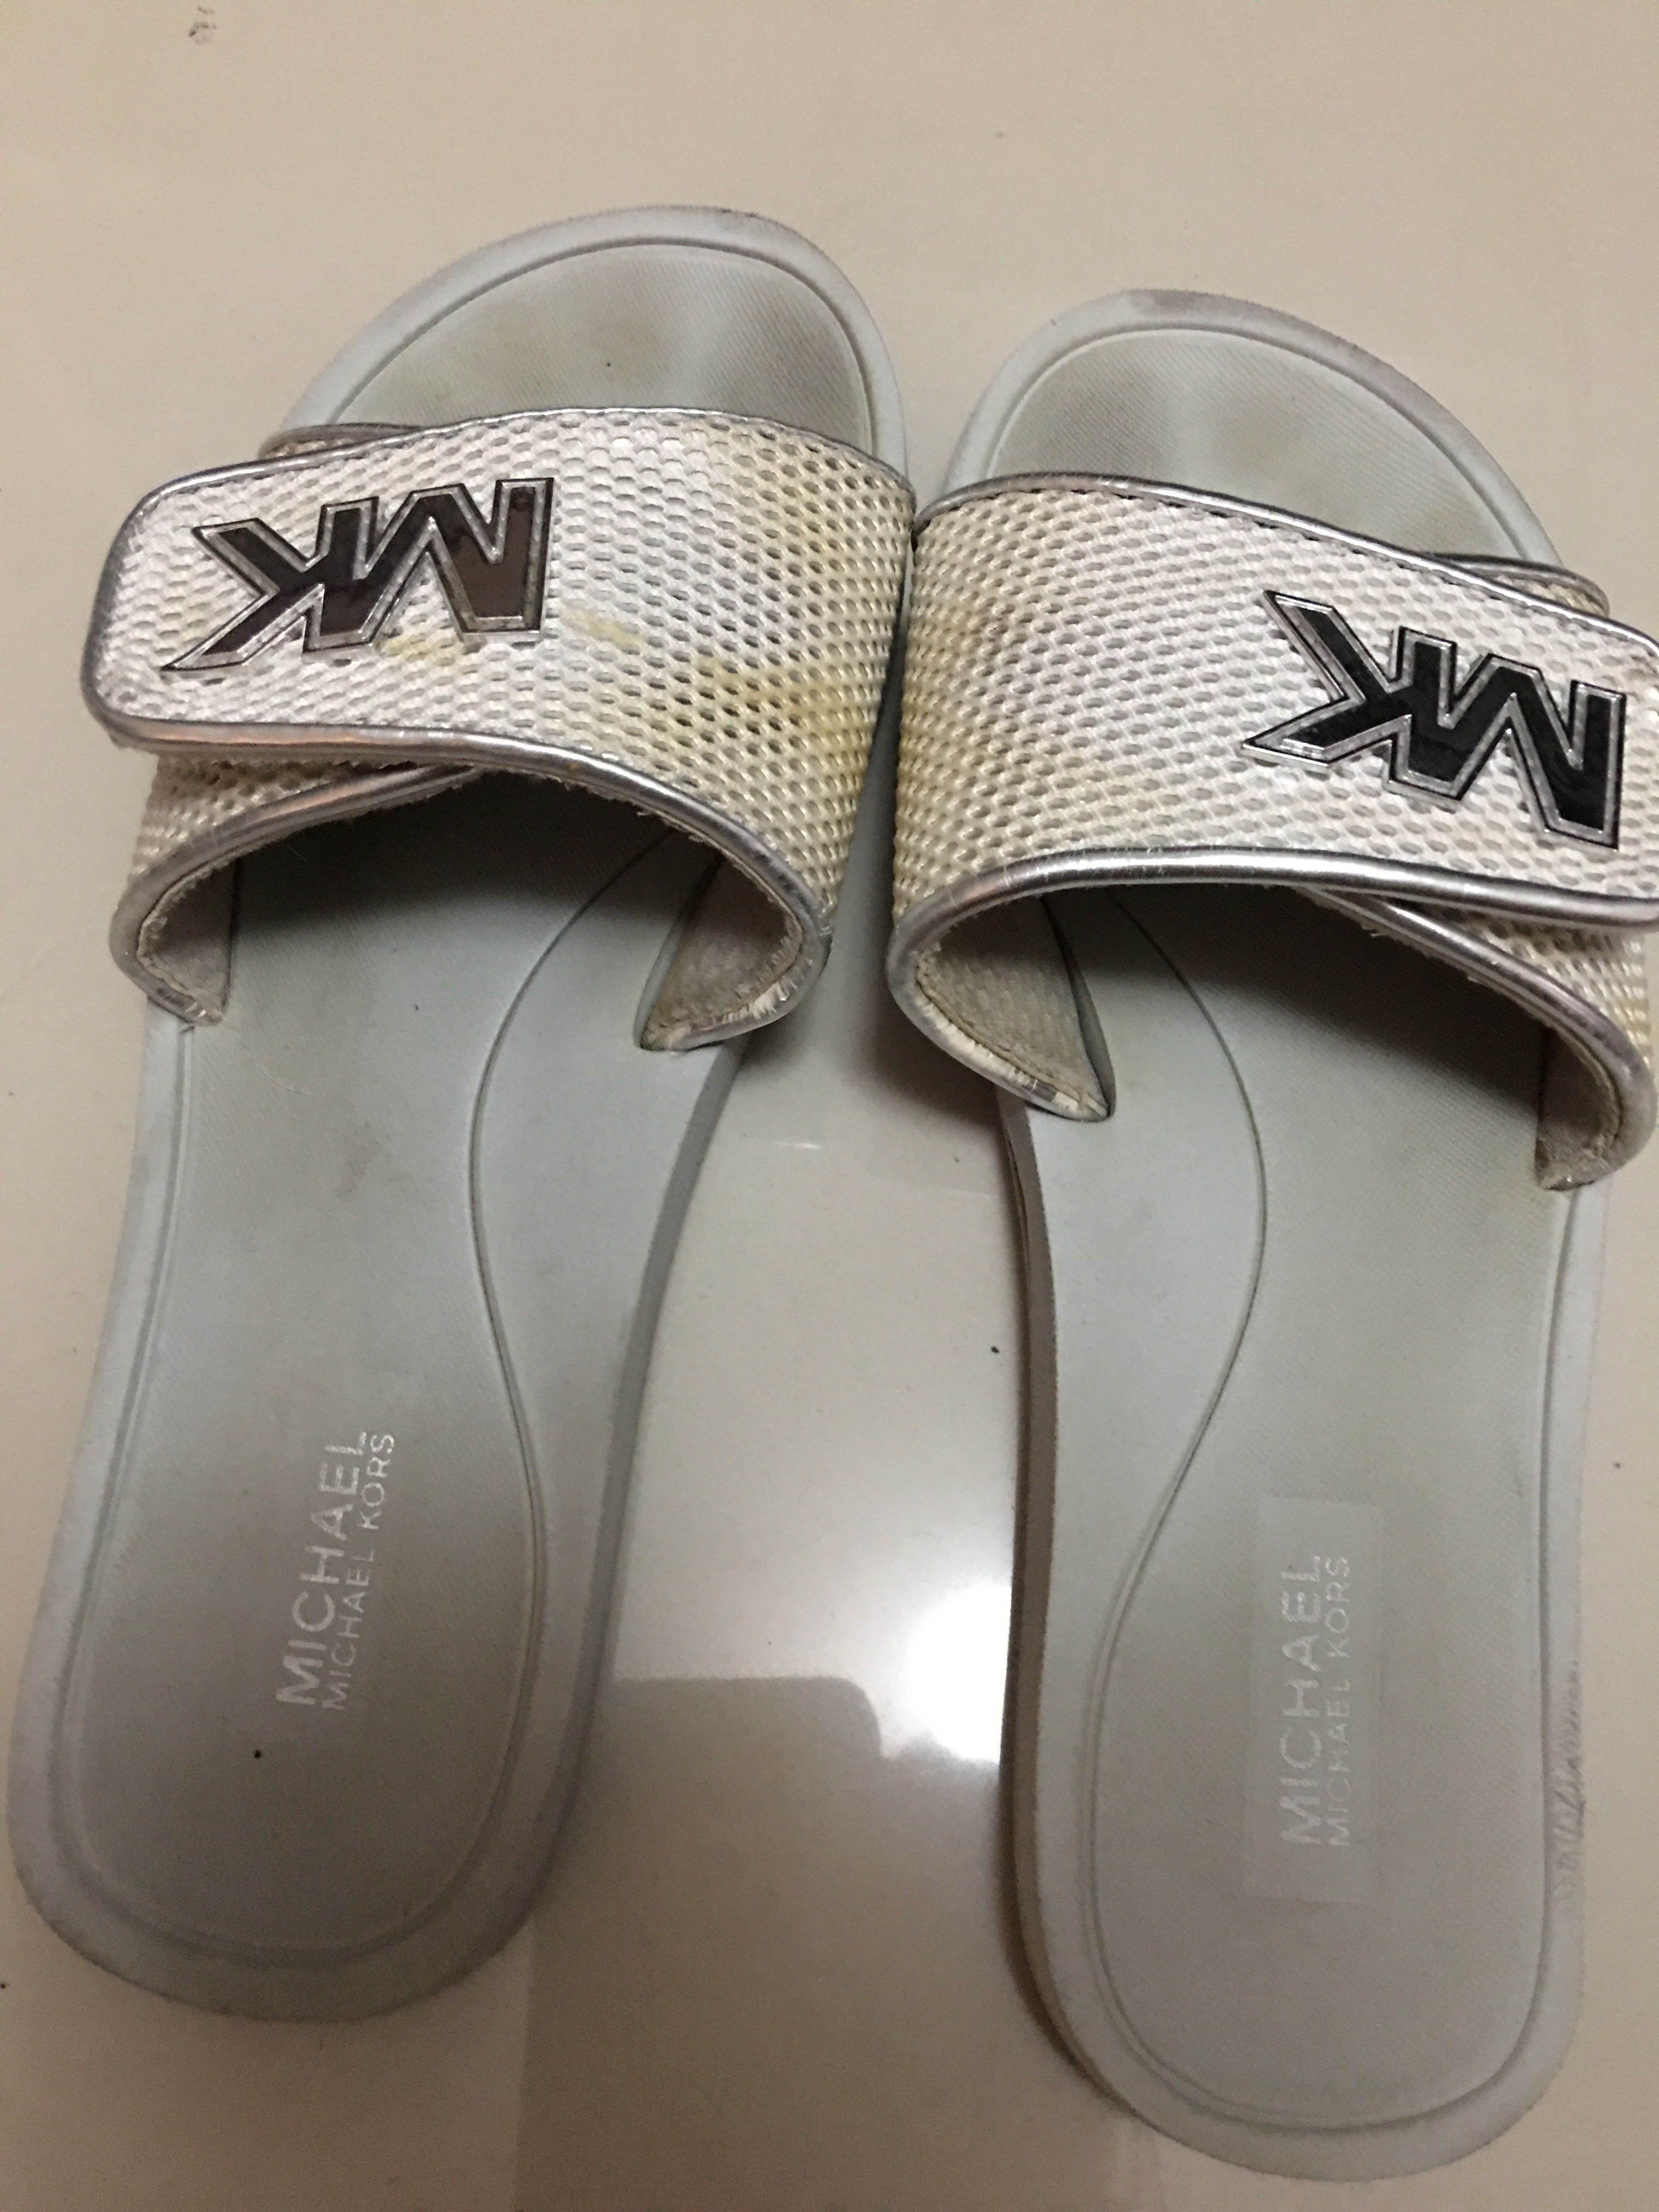 mk slippers canada